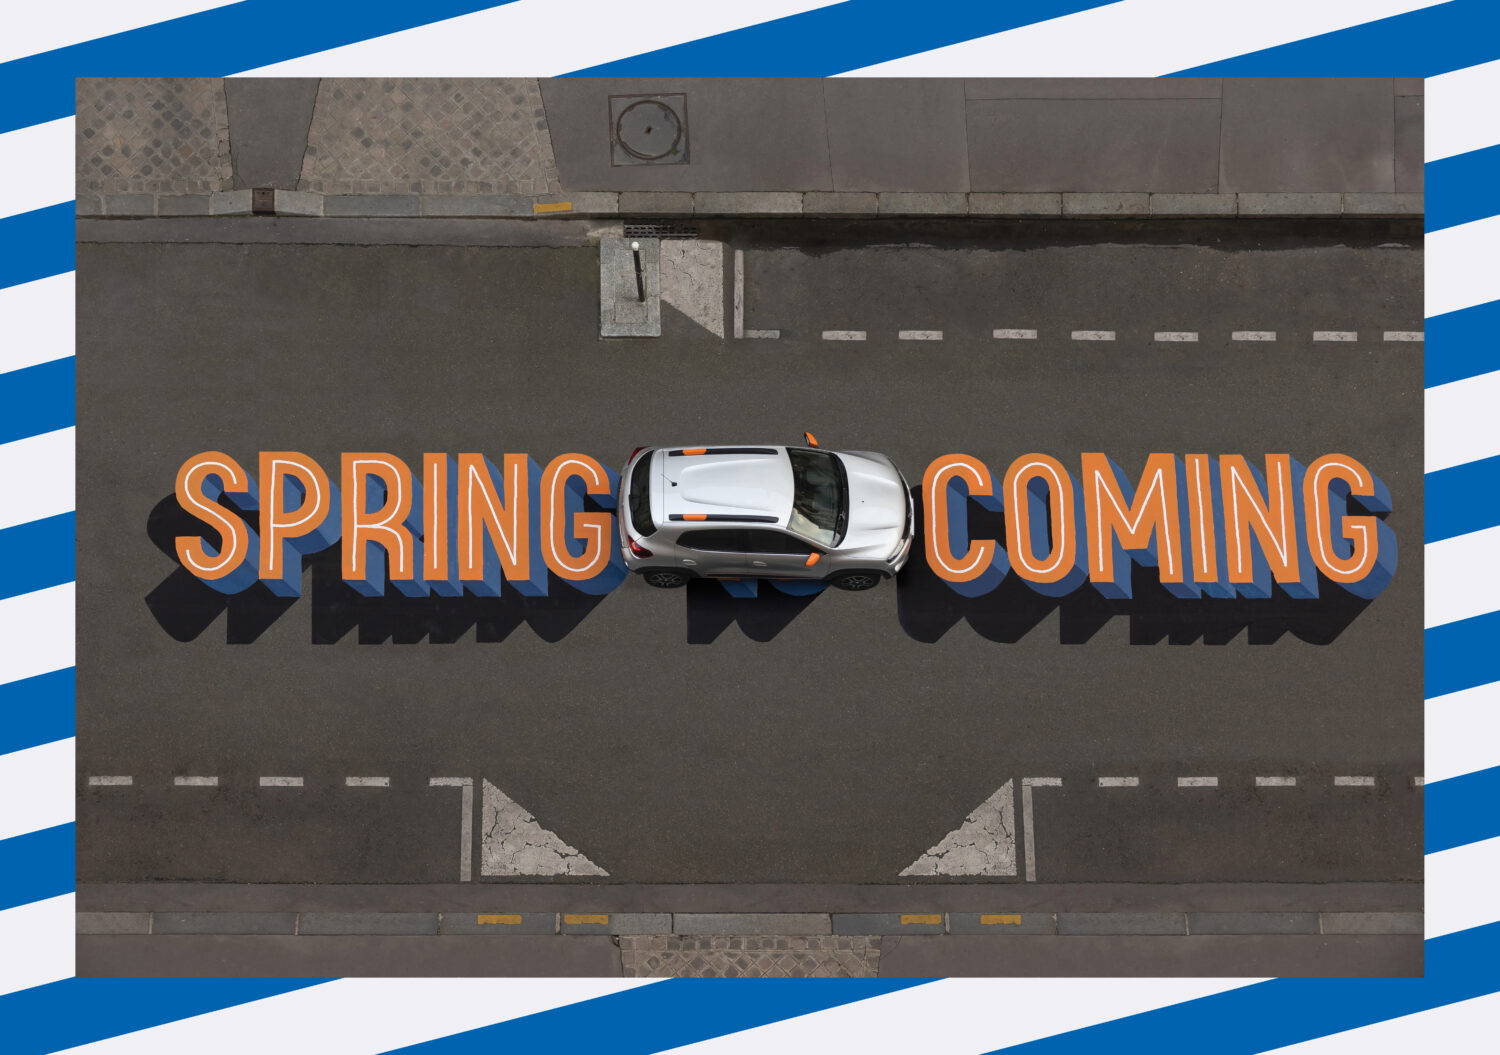 2021 - Spring is coming (1).jpg